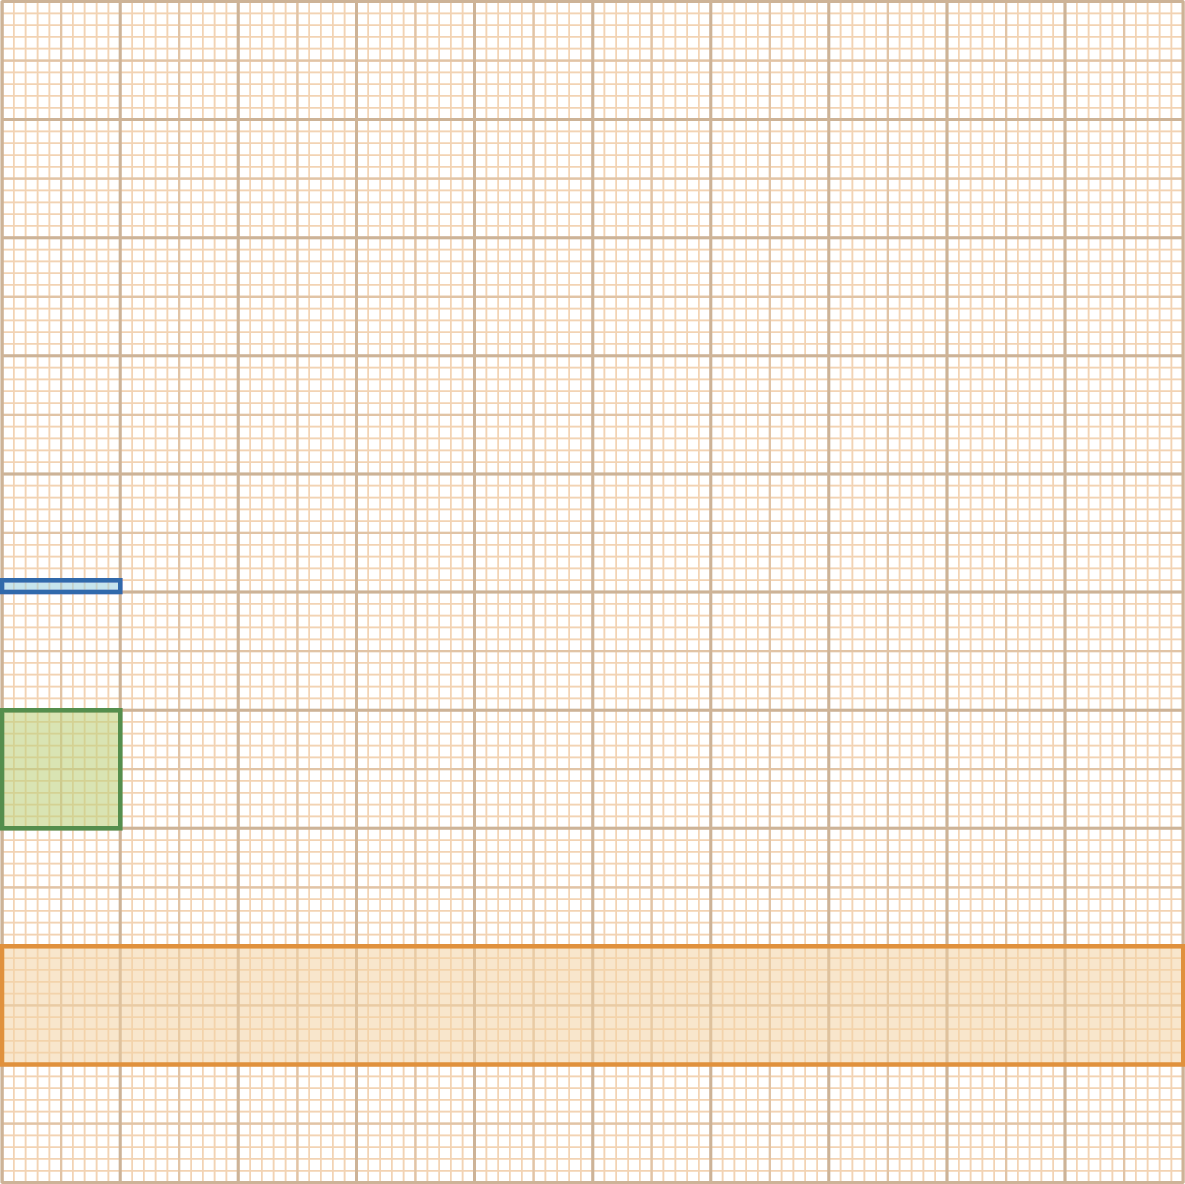 Ilustração. Um quadrado de 10 cm por 10 cm dividido em quadrados de 1 cm de lado, cada quadradinho de 1 cm foi dividido em quatro quadradinhos de 0,5 cm de lado e cada quadrinho de 0,5 cm foi dividido em quadradinhos ainda menores de 0,1 cm de lado. Foi pintada uma faixa laranja de 10 quadradinhos de 1 cm de lado, 1 quadradinho verde de 1 cm de lado e 1 pequena faixa azul de dez quadradinhos de 0,1 cm de lado.